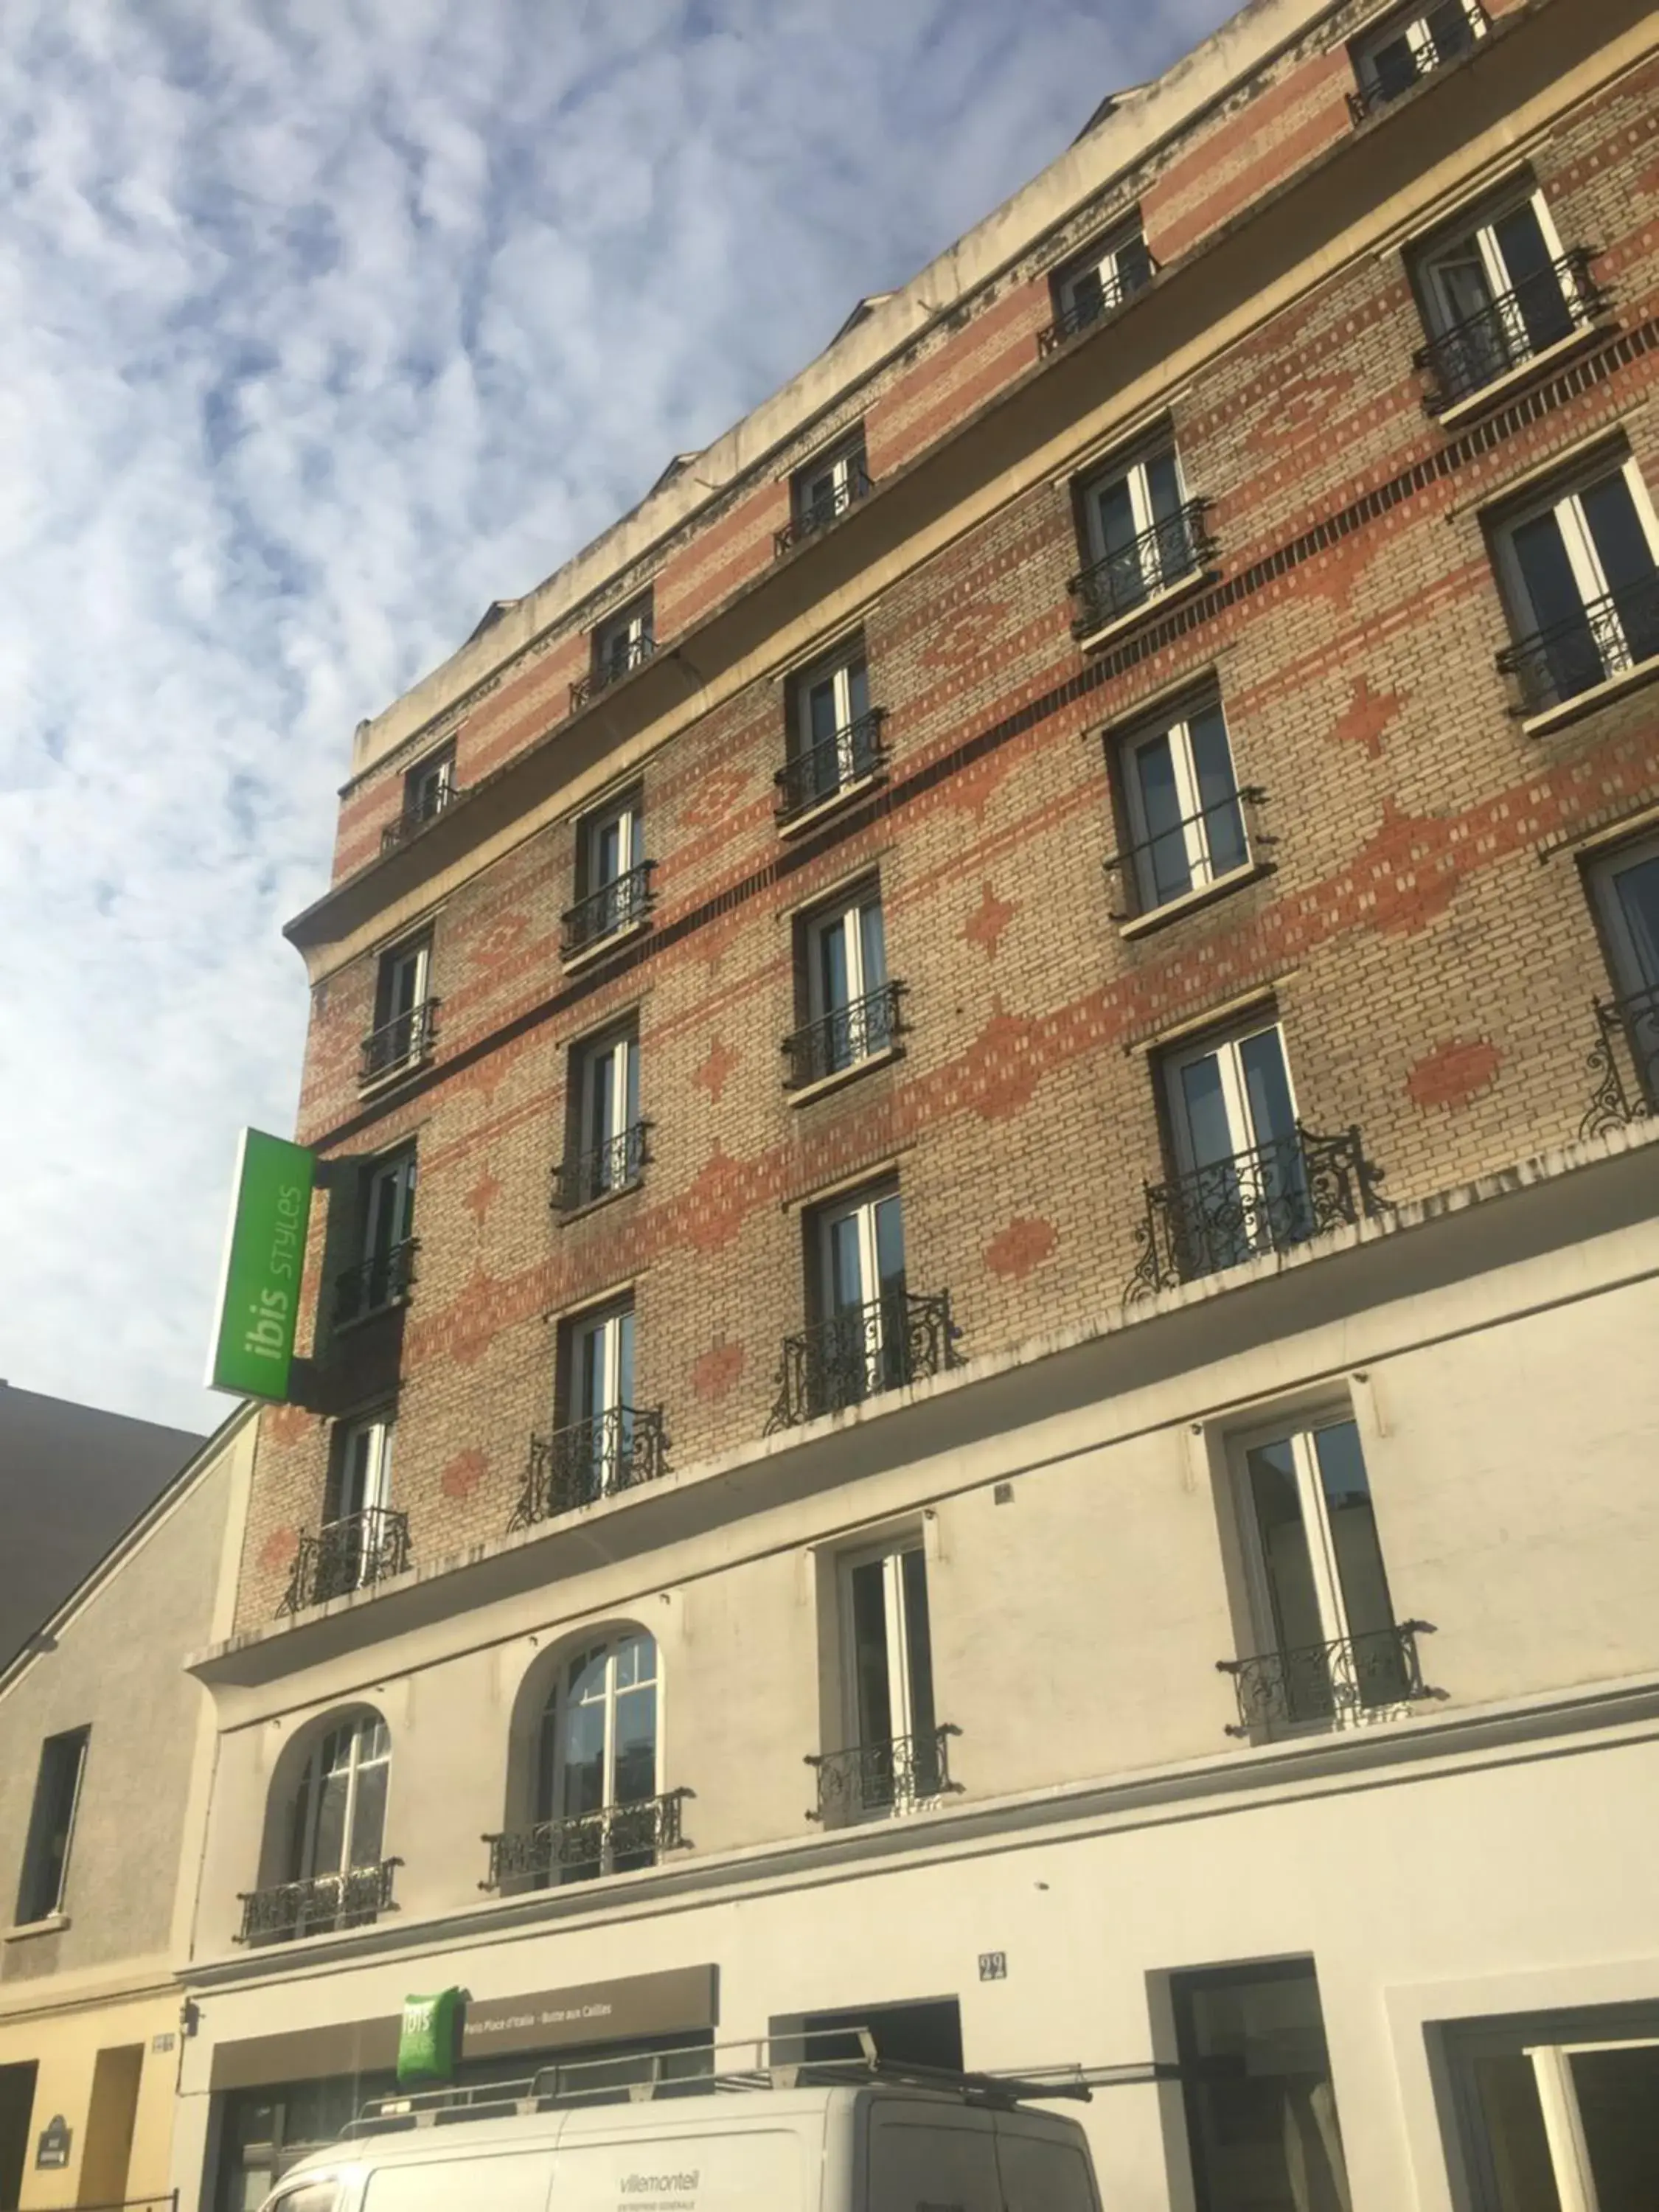 Property Building in Ibis Styles Paris Place d'Italie - Butte Aux Cailles